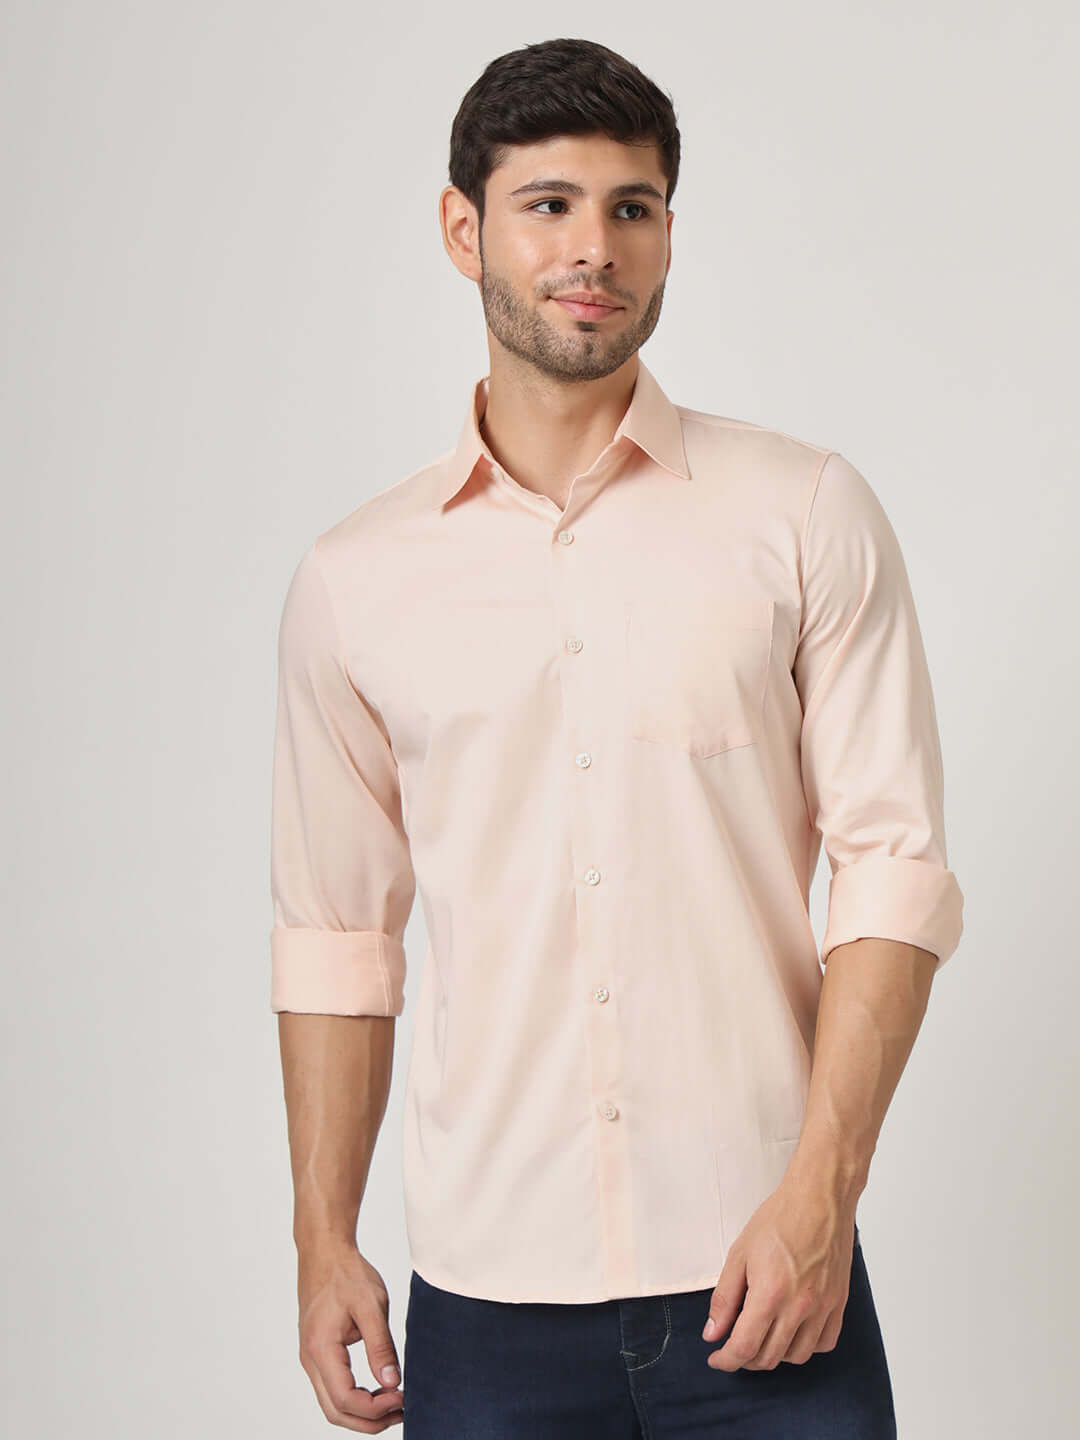 Premium Cotton Satin Rose Pink Shirt